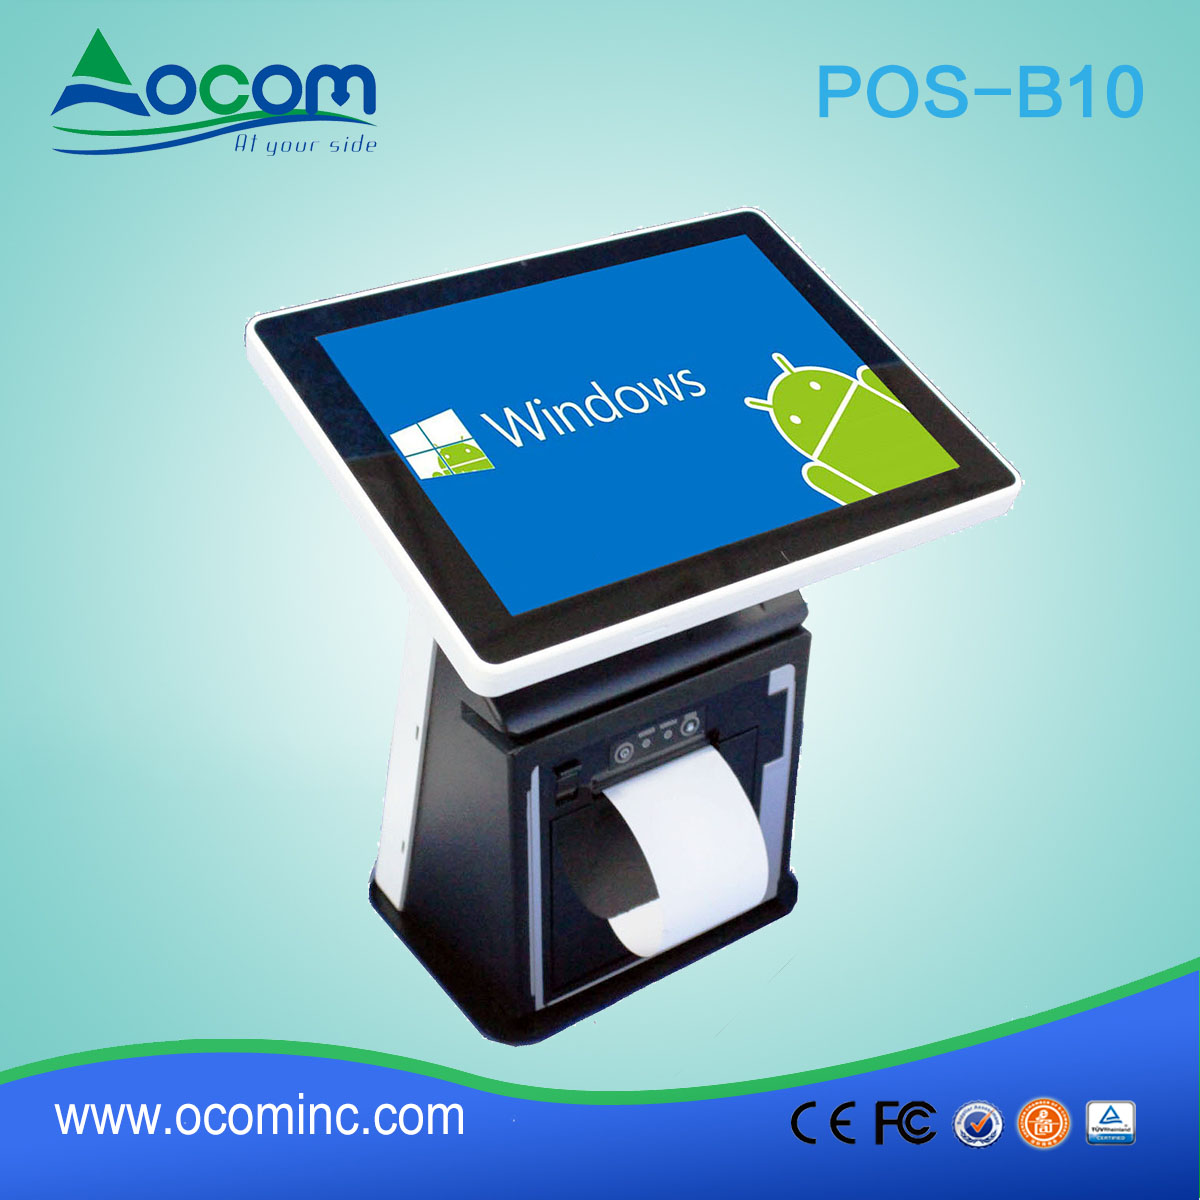 POS-B10---China Factory made all en un seul écran tactile 10,1 "POS Terminal avec machine d'imprimante thermique"